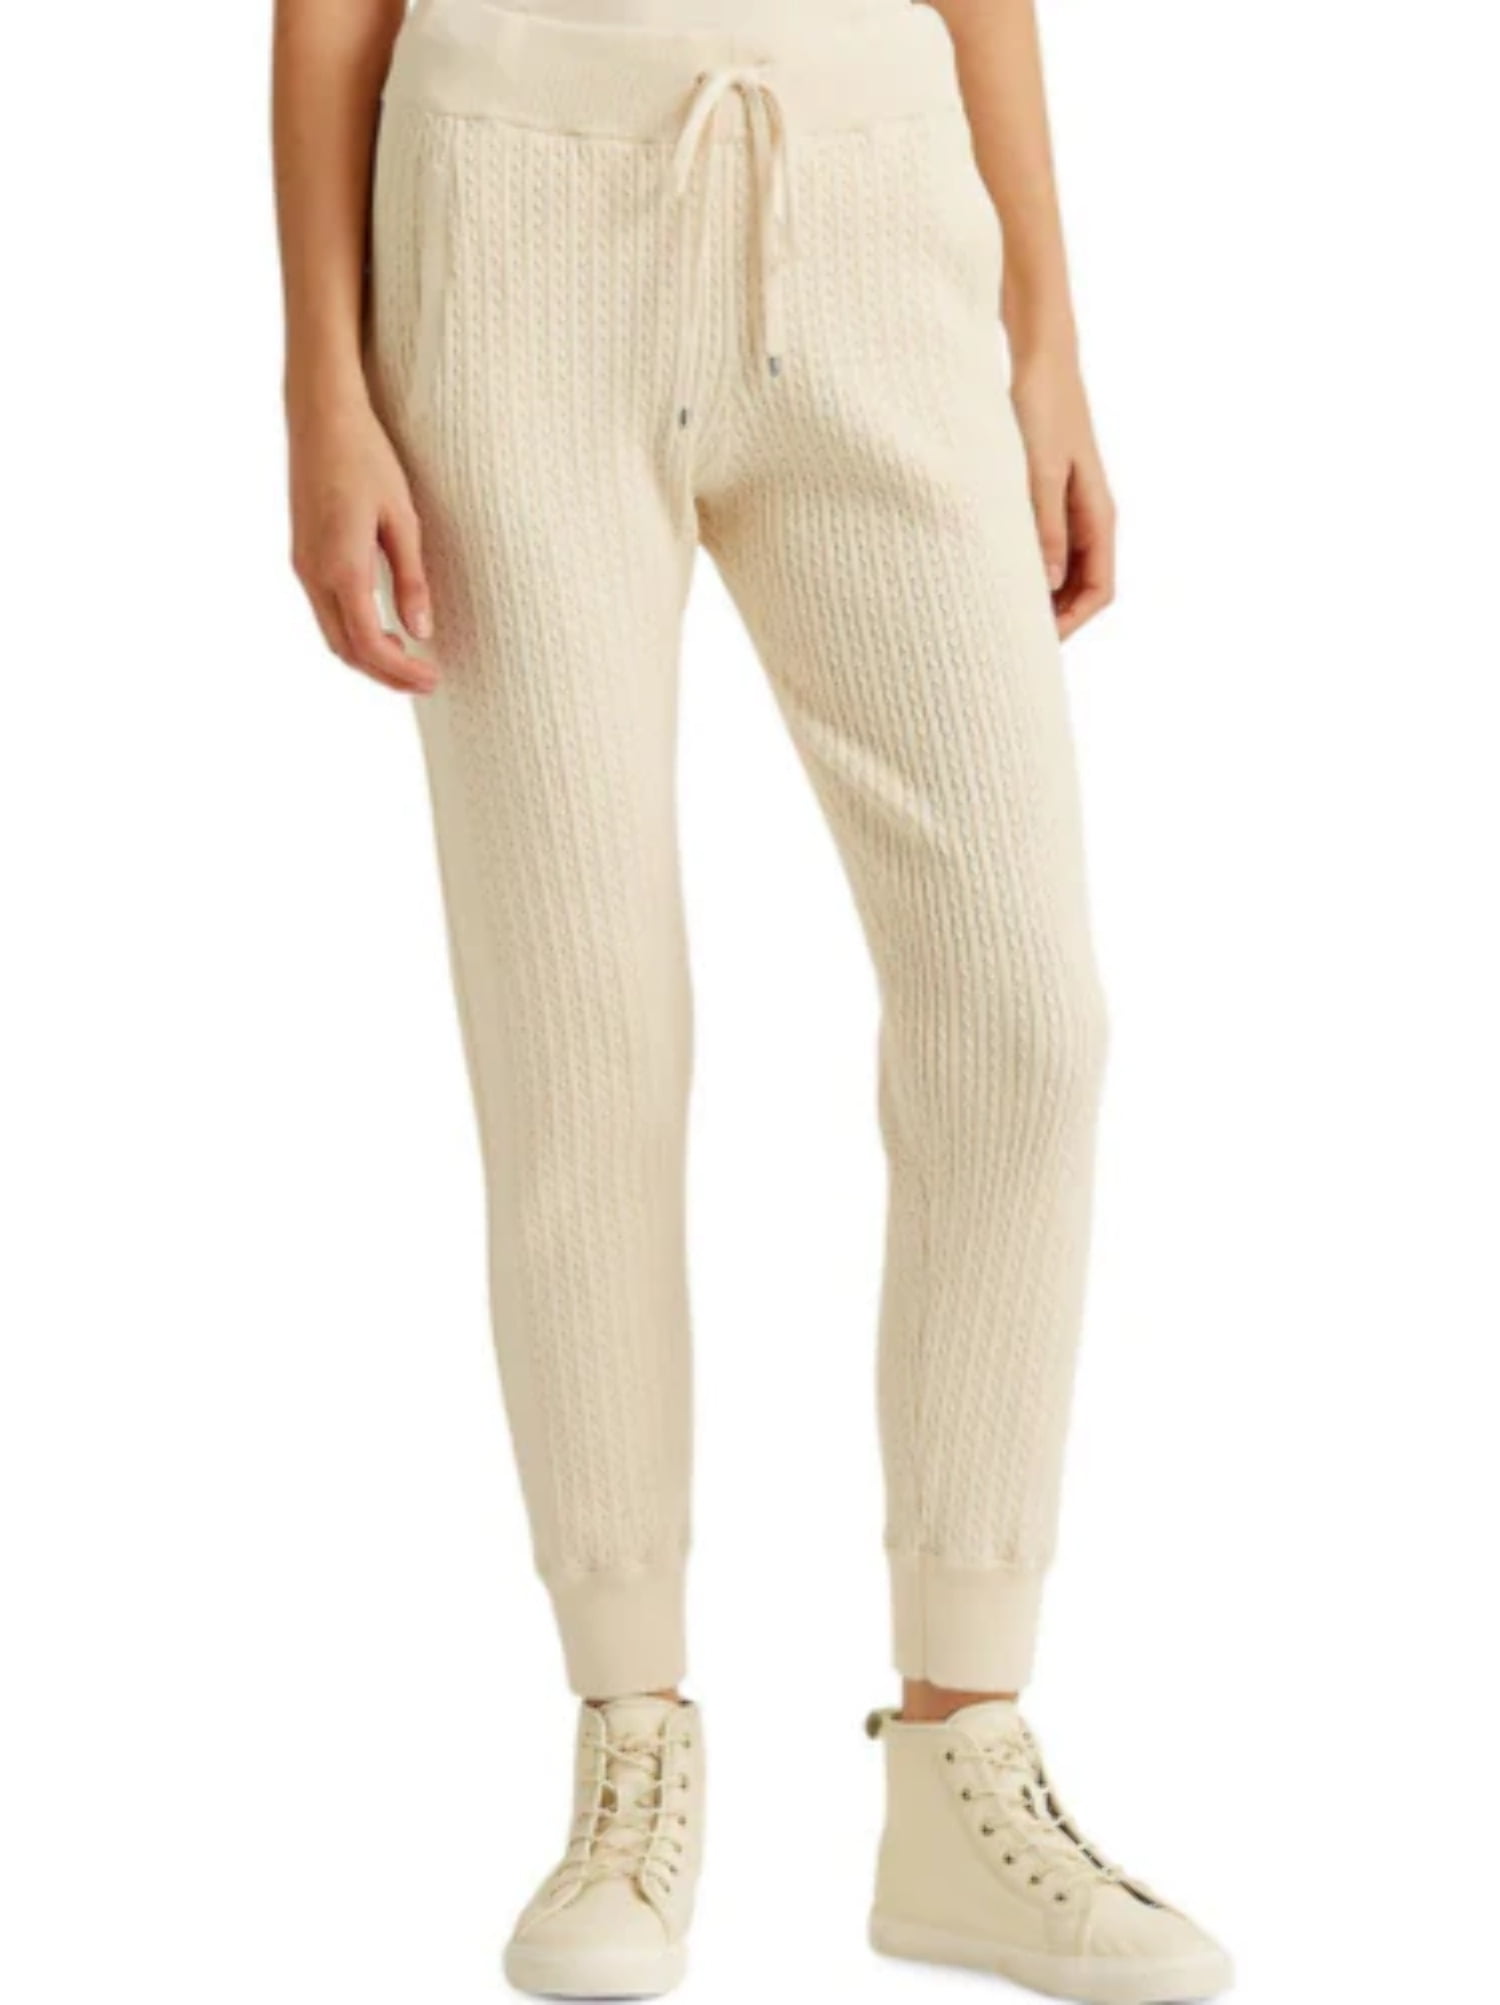 Ralph Lauren Women's Cable Knit Jogger Pants Brown Size X-Large 